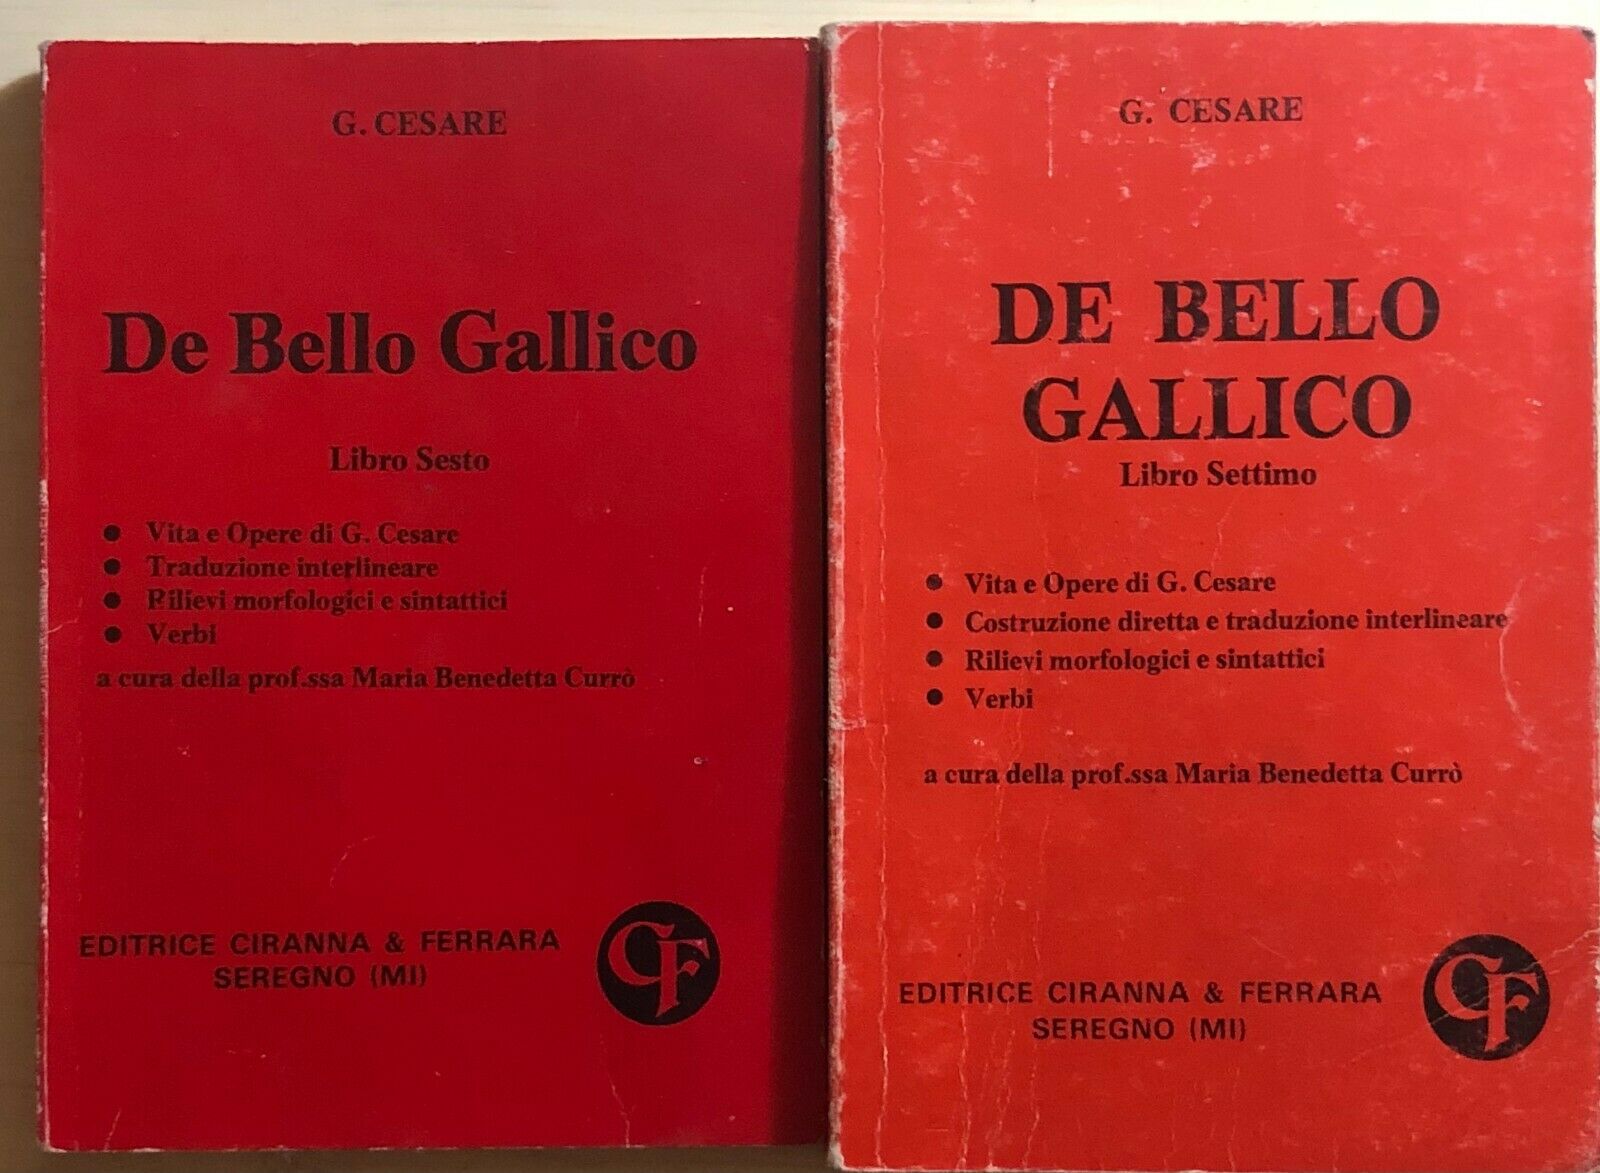 De bello gallico Libri 6-7 di Giulio Cesare, 1983, Editrice Ciranna & Ferrara